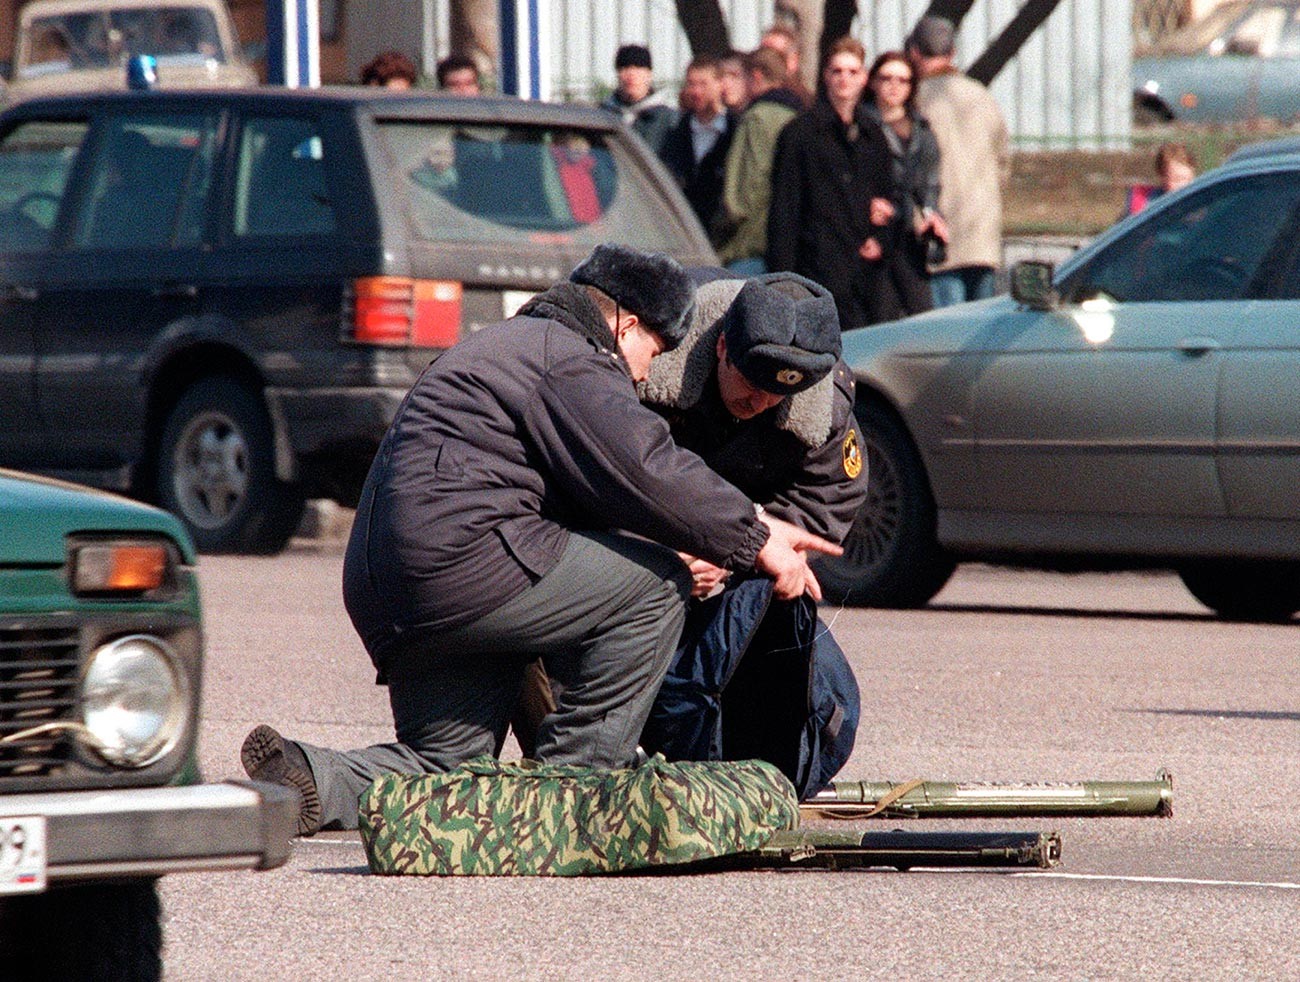 Руски полицајци испред америчке амбасаде са ручним бацачима граната из којих је покушан напад на амбасаду САД у Москви у оквиру акције протеста против НАТО бомбардовања Југославије, 28. март 1999.